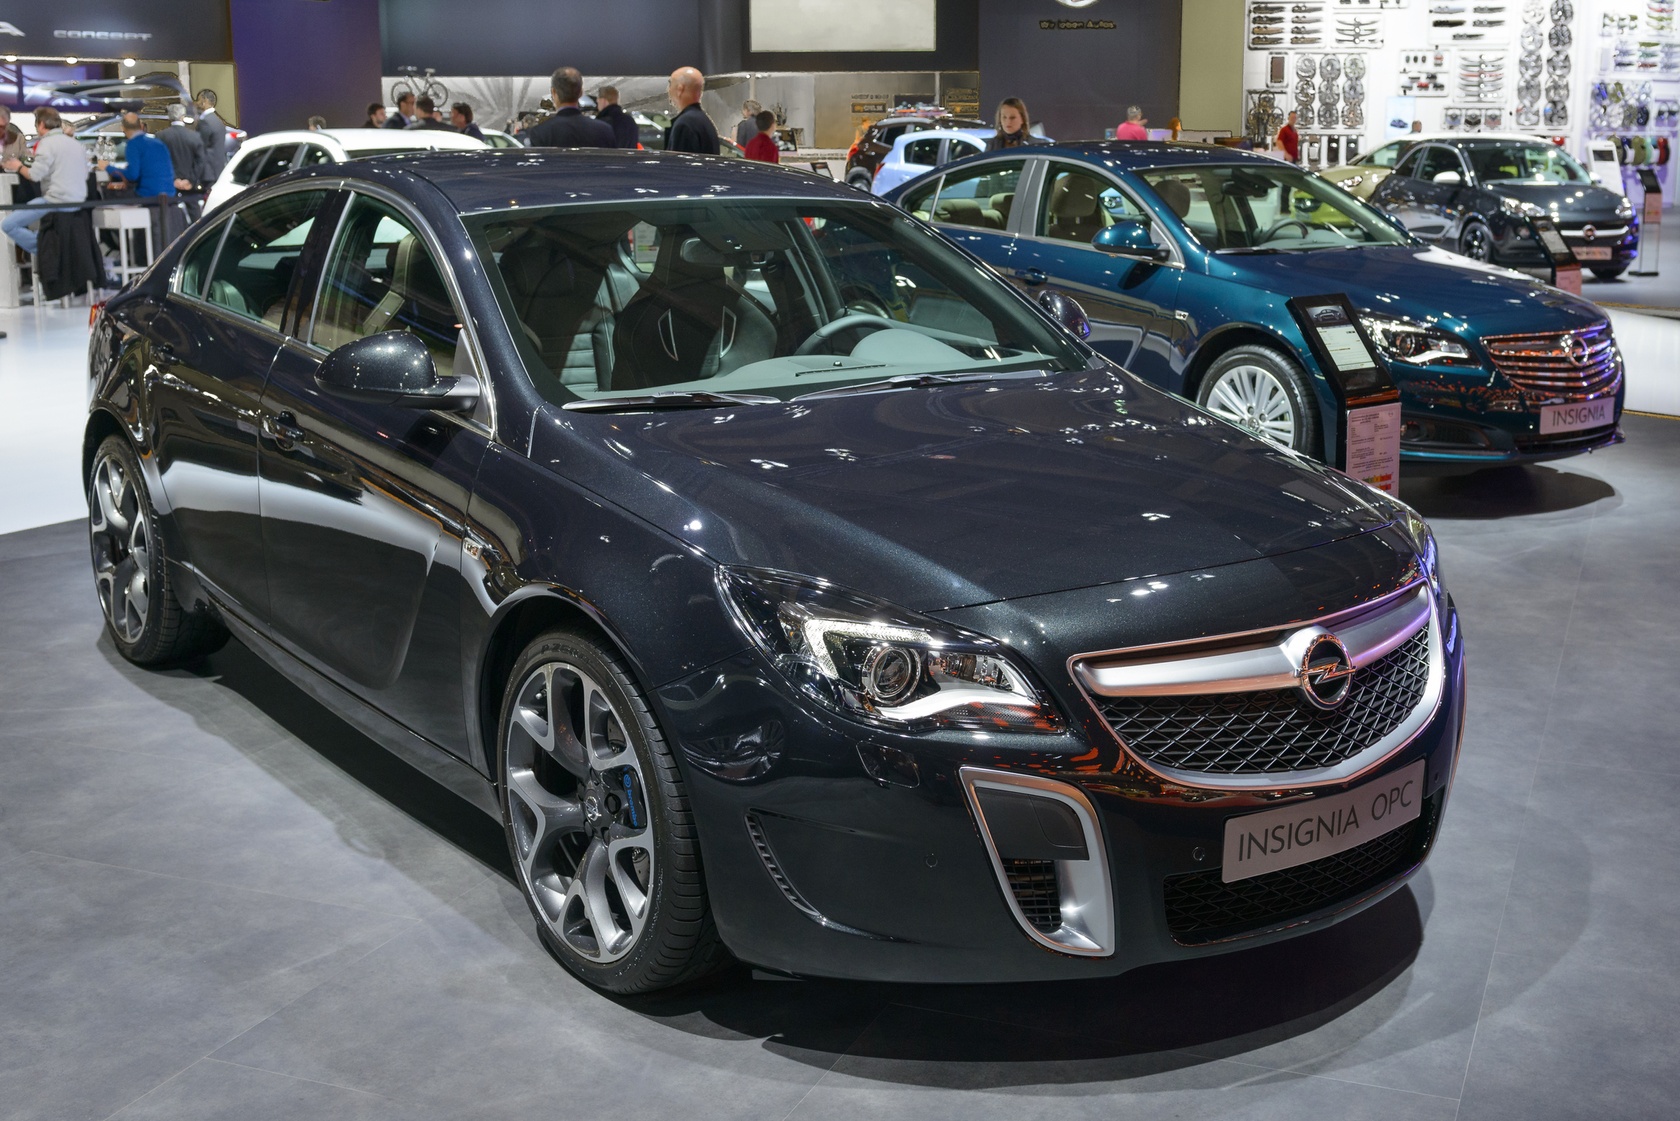 Opel Insignia w najmocniejszej wersji silnika - OPC. Podobno pali 16l/100km w trybie miejskim